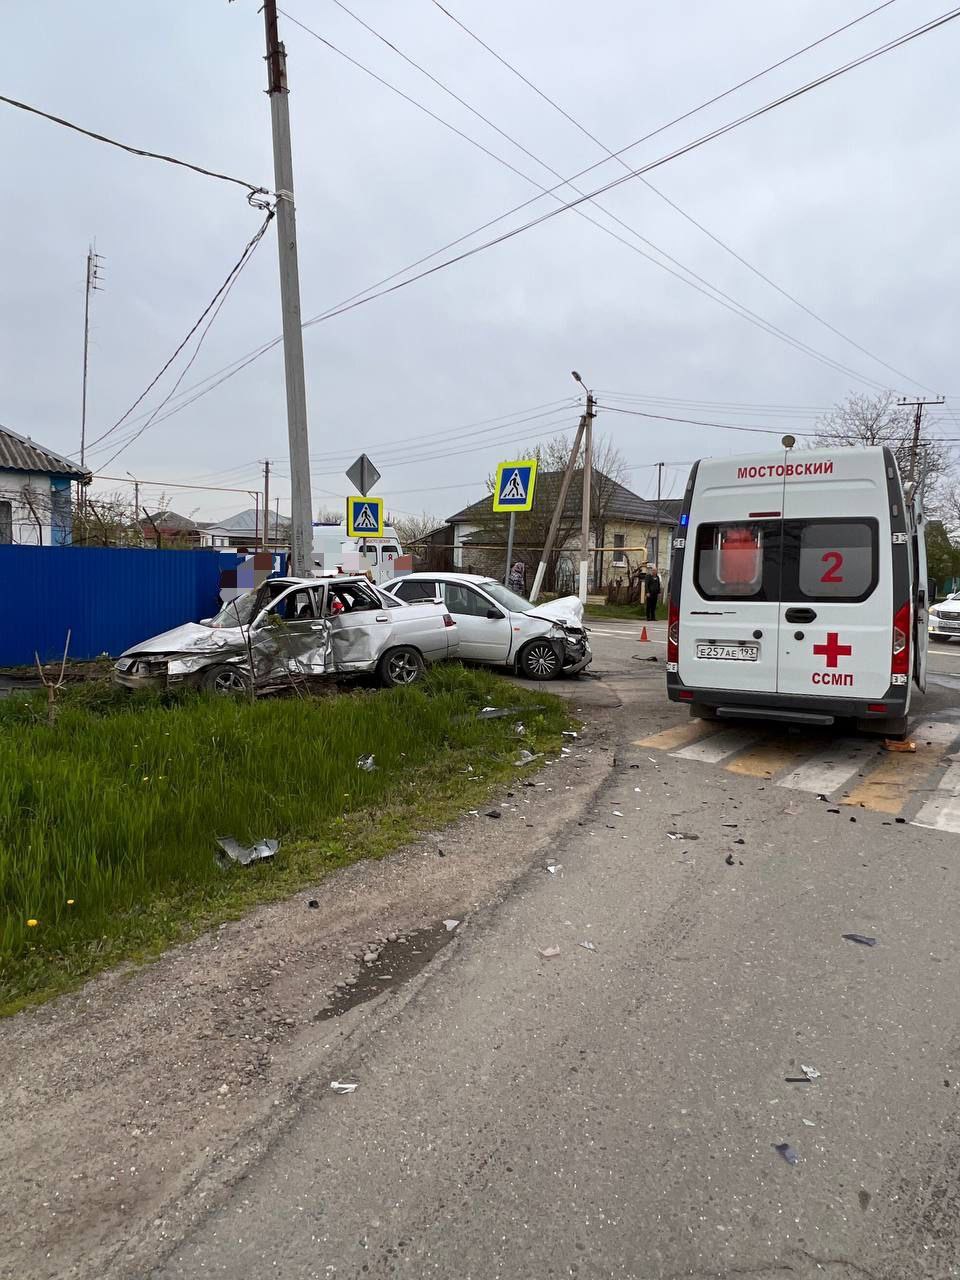 Один человек погиб и двое получили травмы в ДТП, которое произошло 11 апреля на пересечении улиц Горького и Трудовой в посёлке Мостовском 1